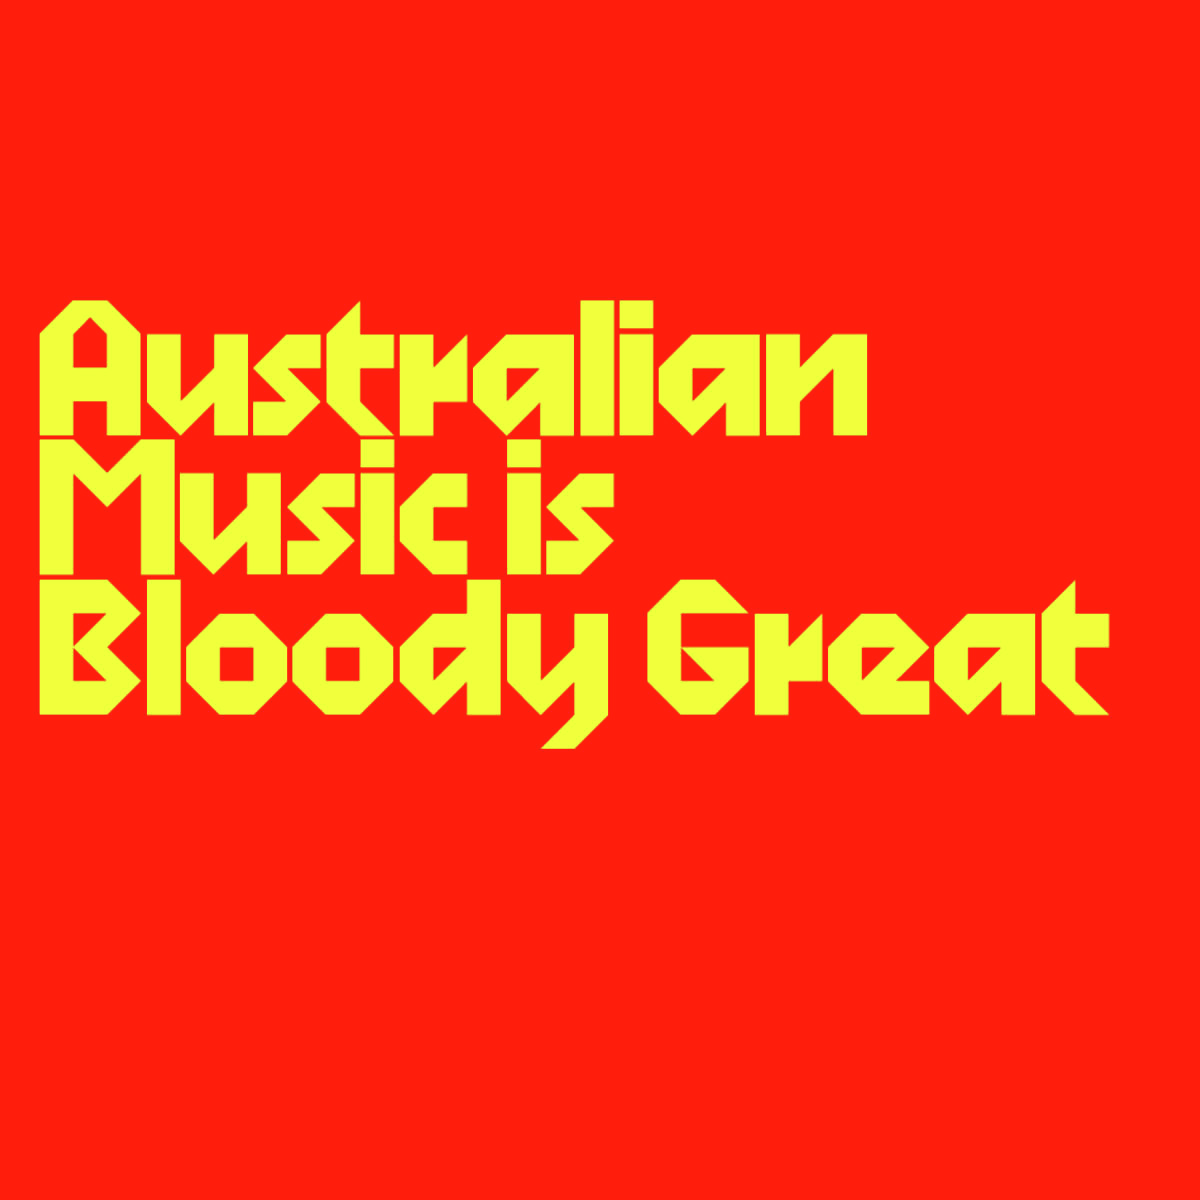 Australian Music is Bloody Great